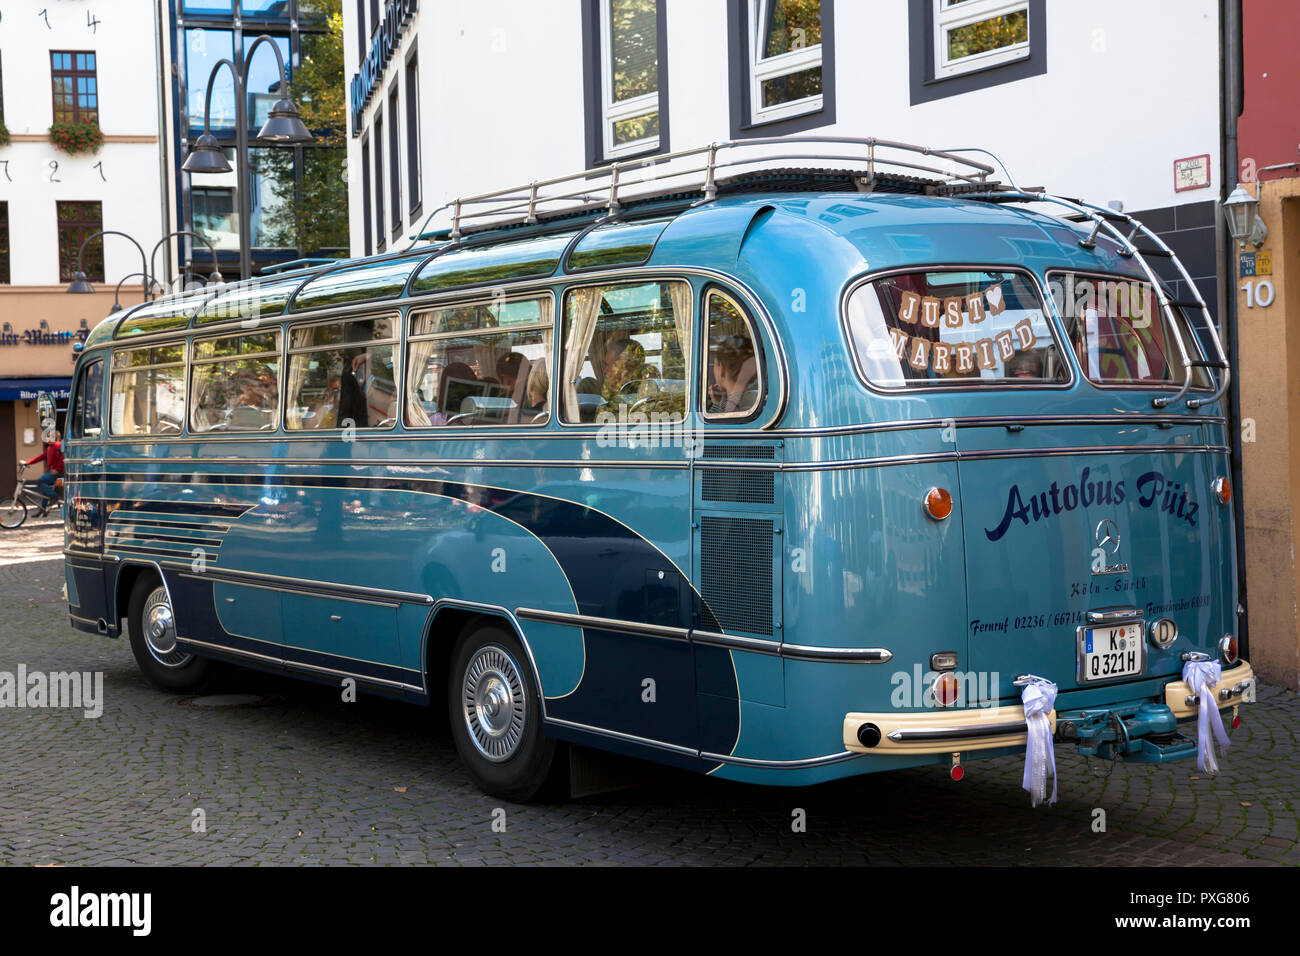 Mercedes-Benz Oldtimer Bus Modell O 321 H auf dem Heumarkt, buchten für  eine Hochzeit, Köln, Deutschland. Mercedes-Benz Oldtimer Modell Reisebus O  321 H in d Stockfotografie - Alamy